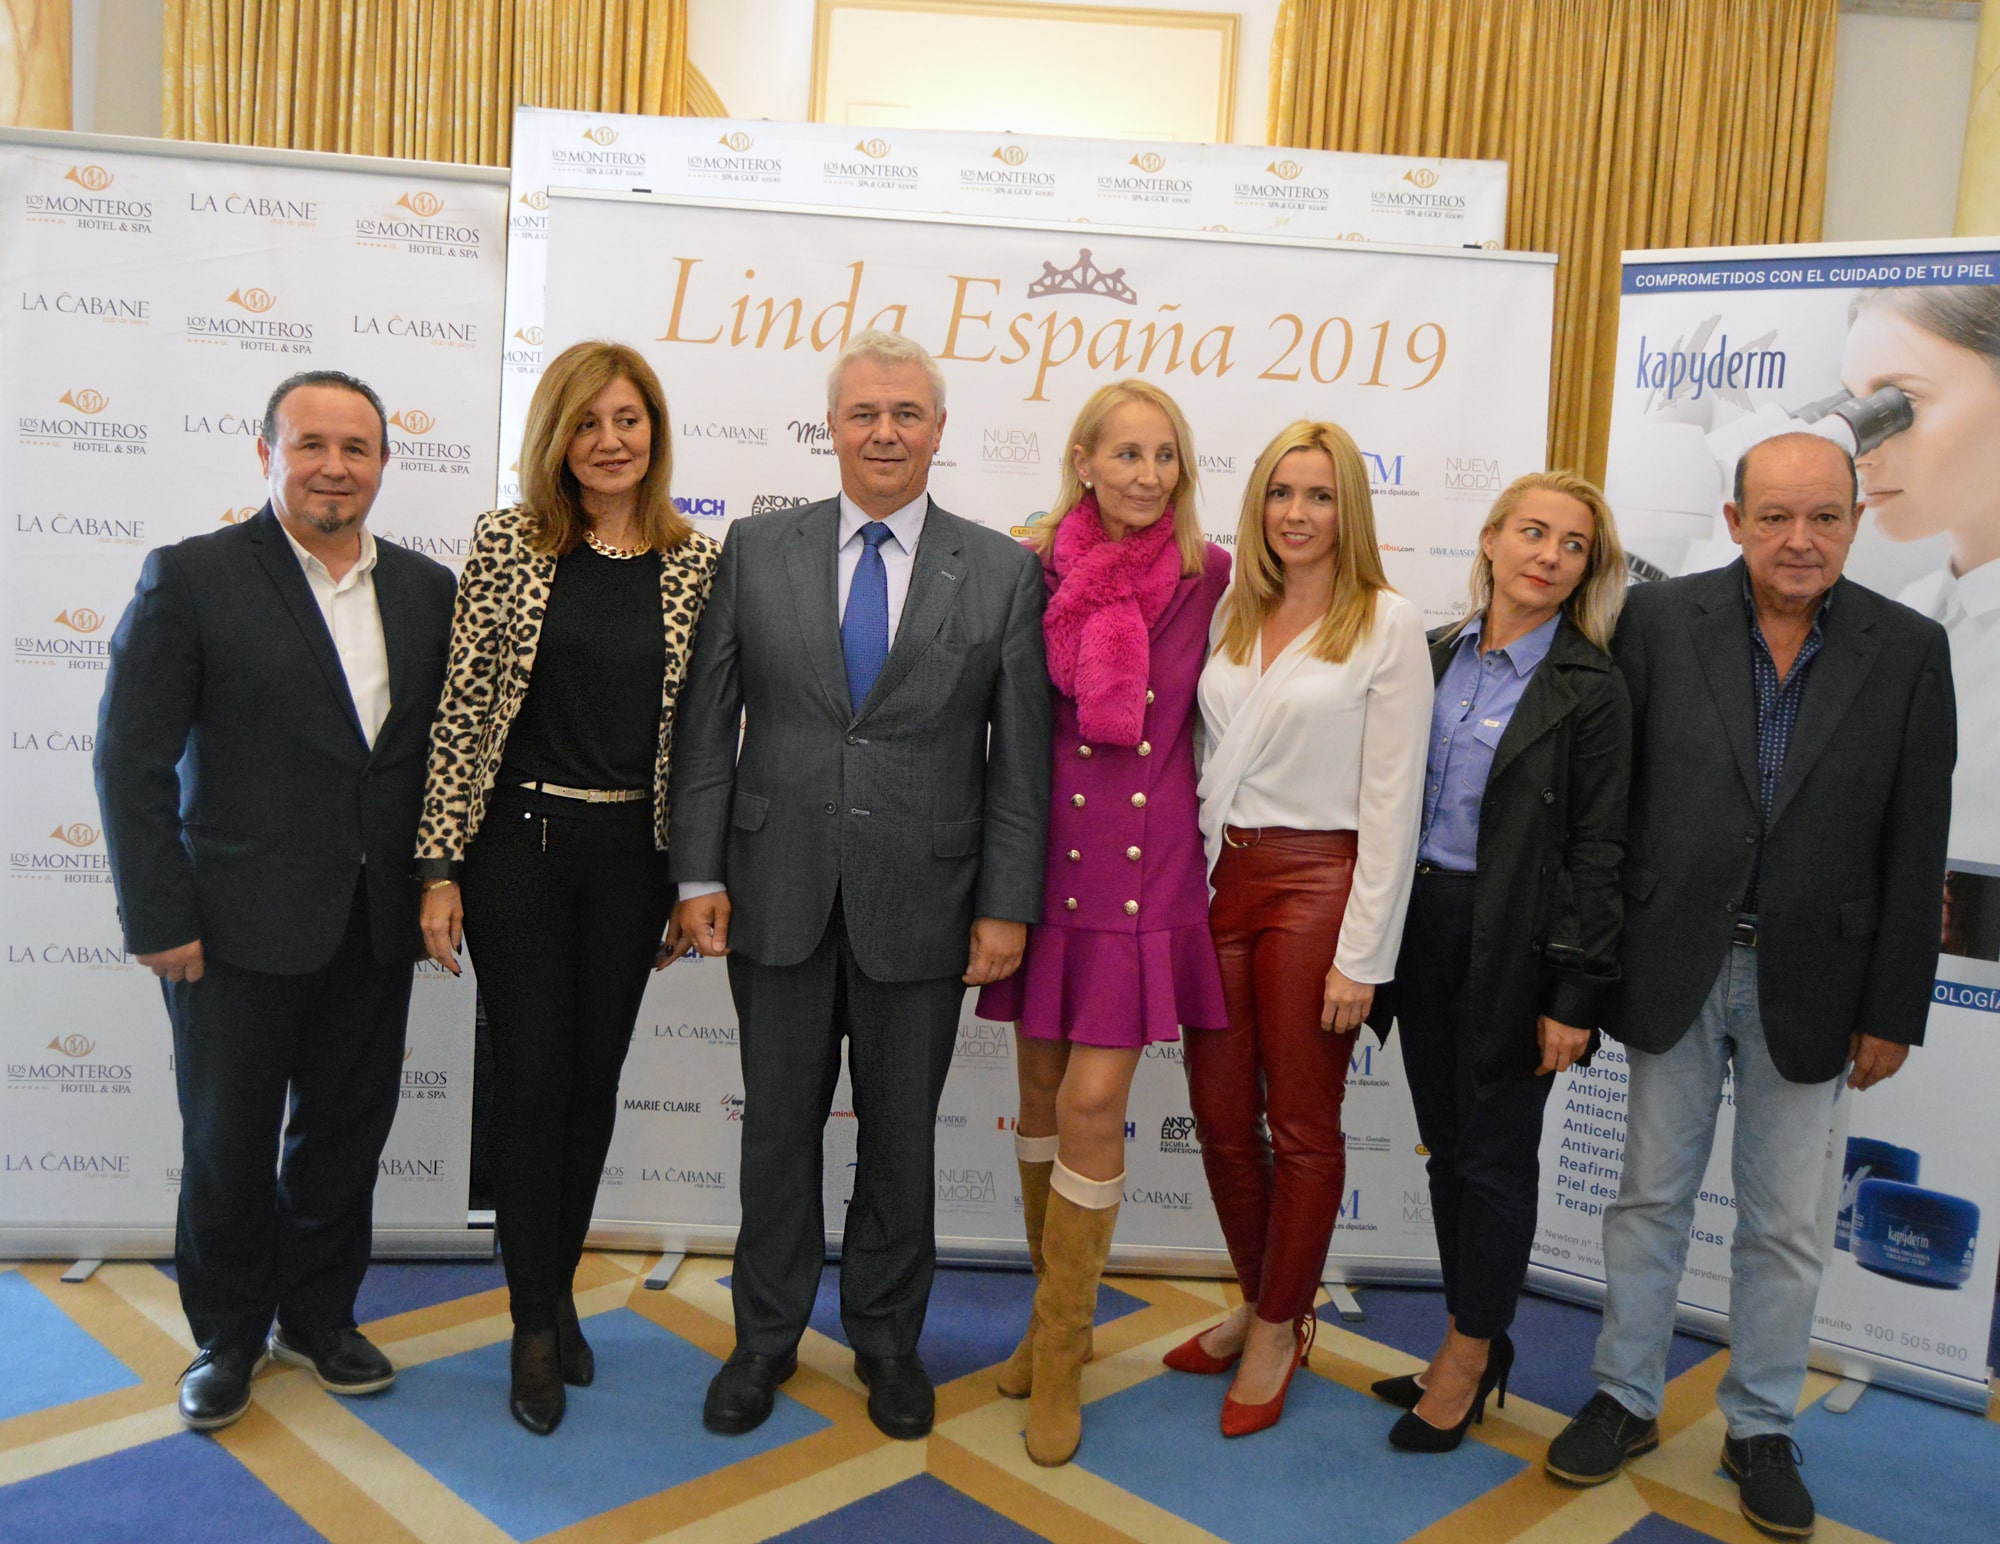 El certamen Linda España 2019 tendrá lugar en el Hotel Los Monteros